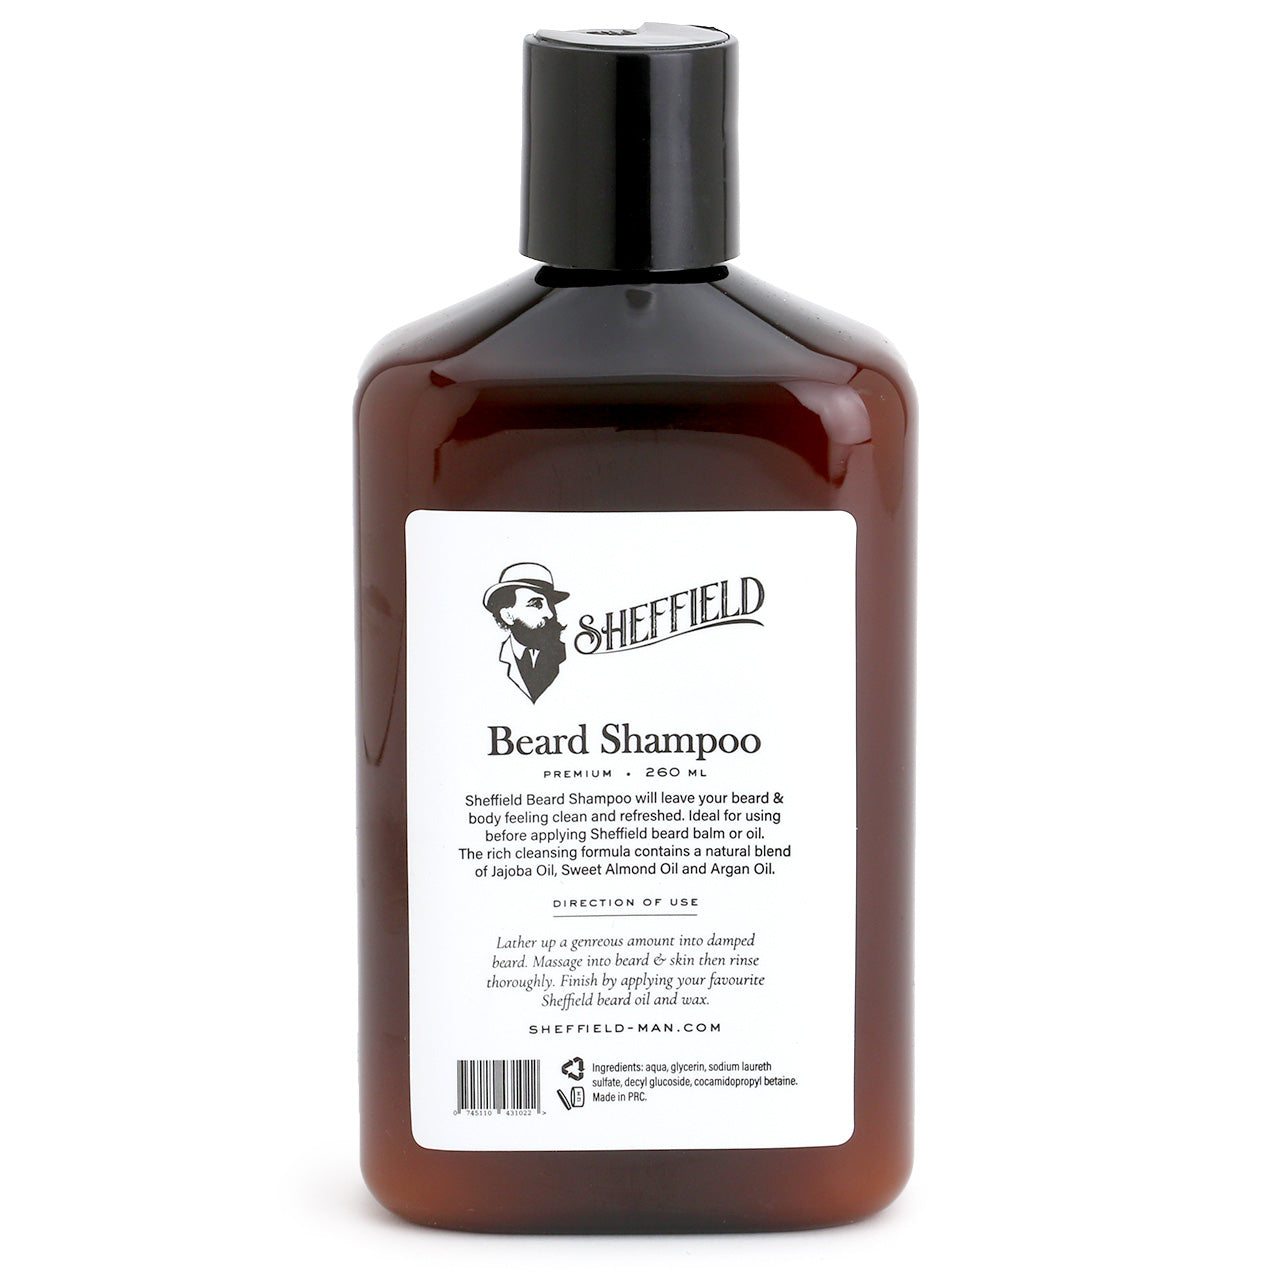 Sheffield Beard Shampoo in amber bottle